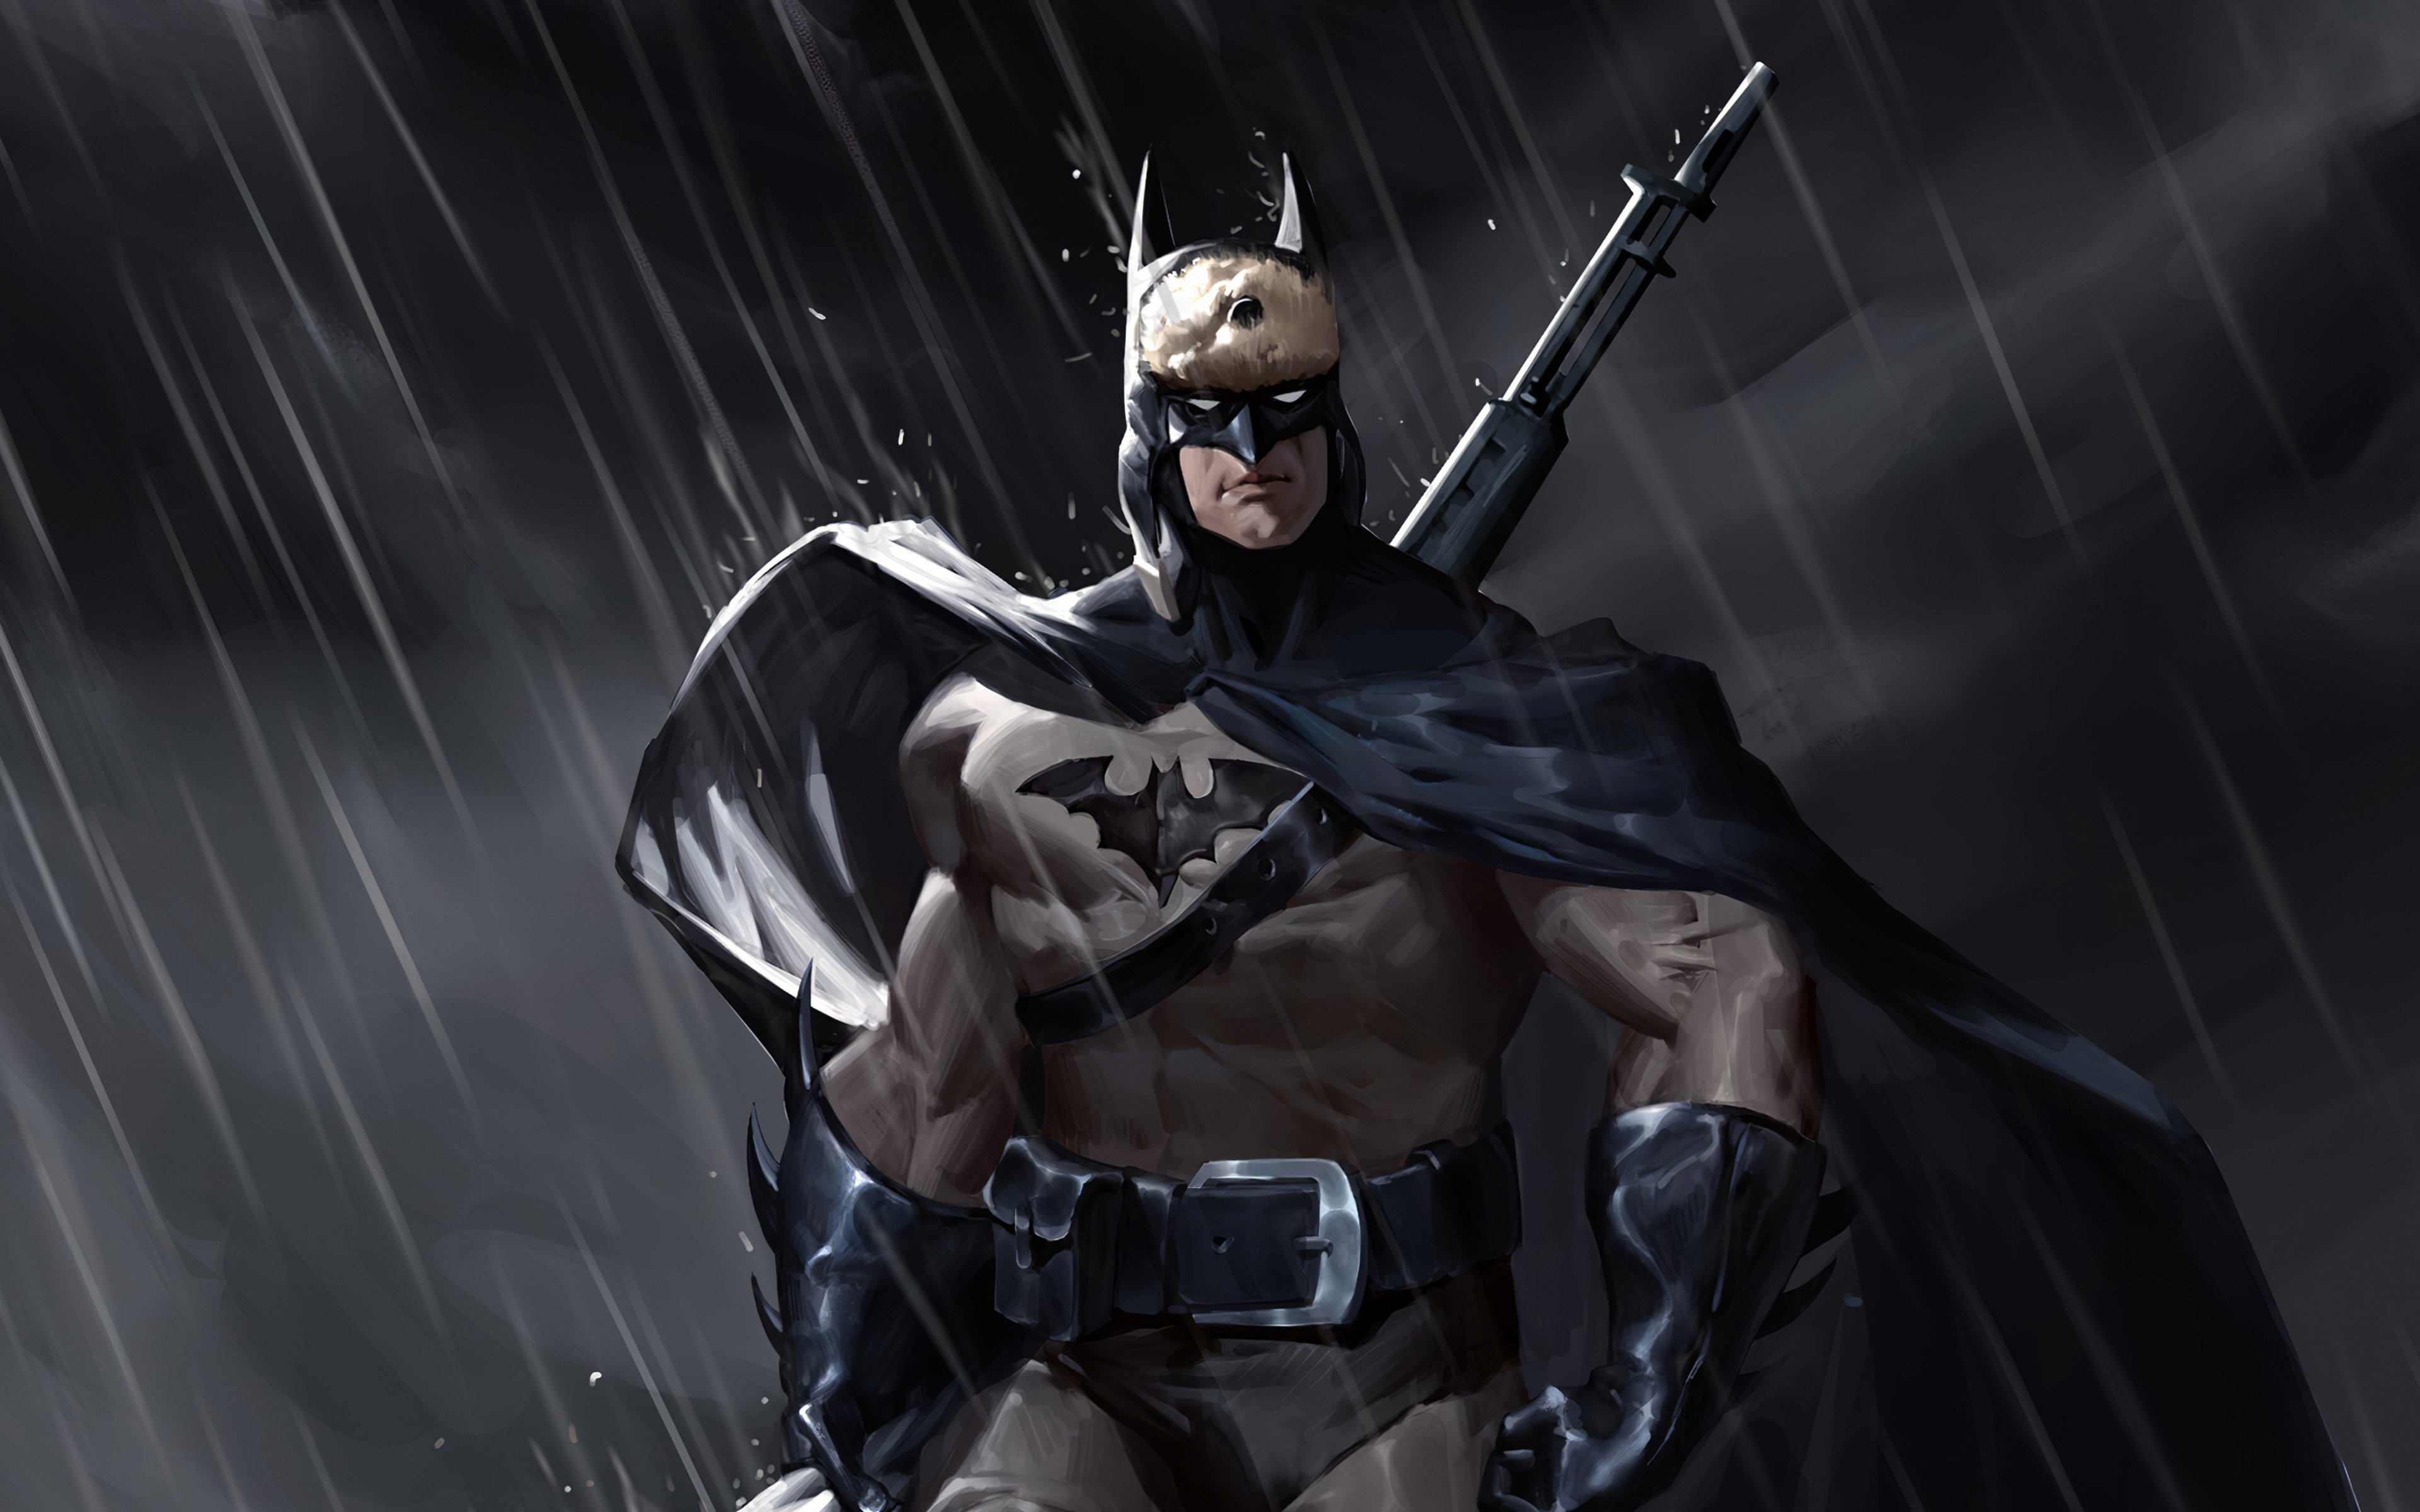 Batman in the rain Wallpaper 4k Ultra HD ID:4923